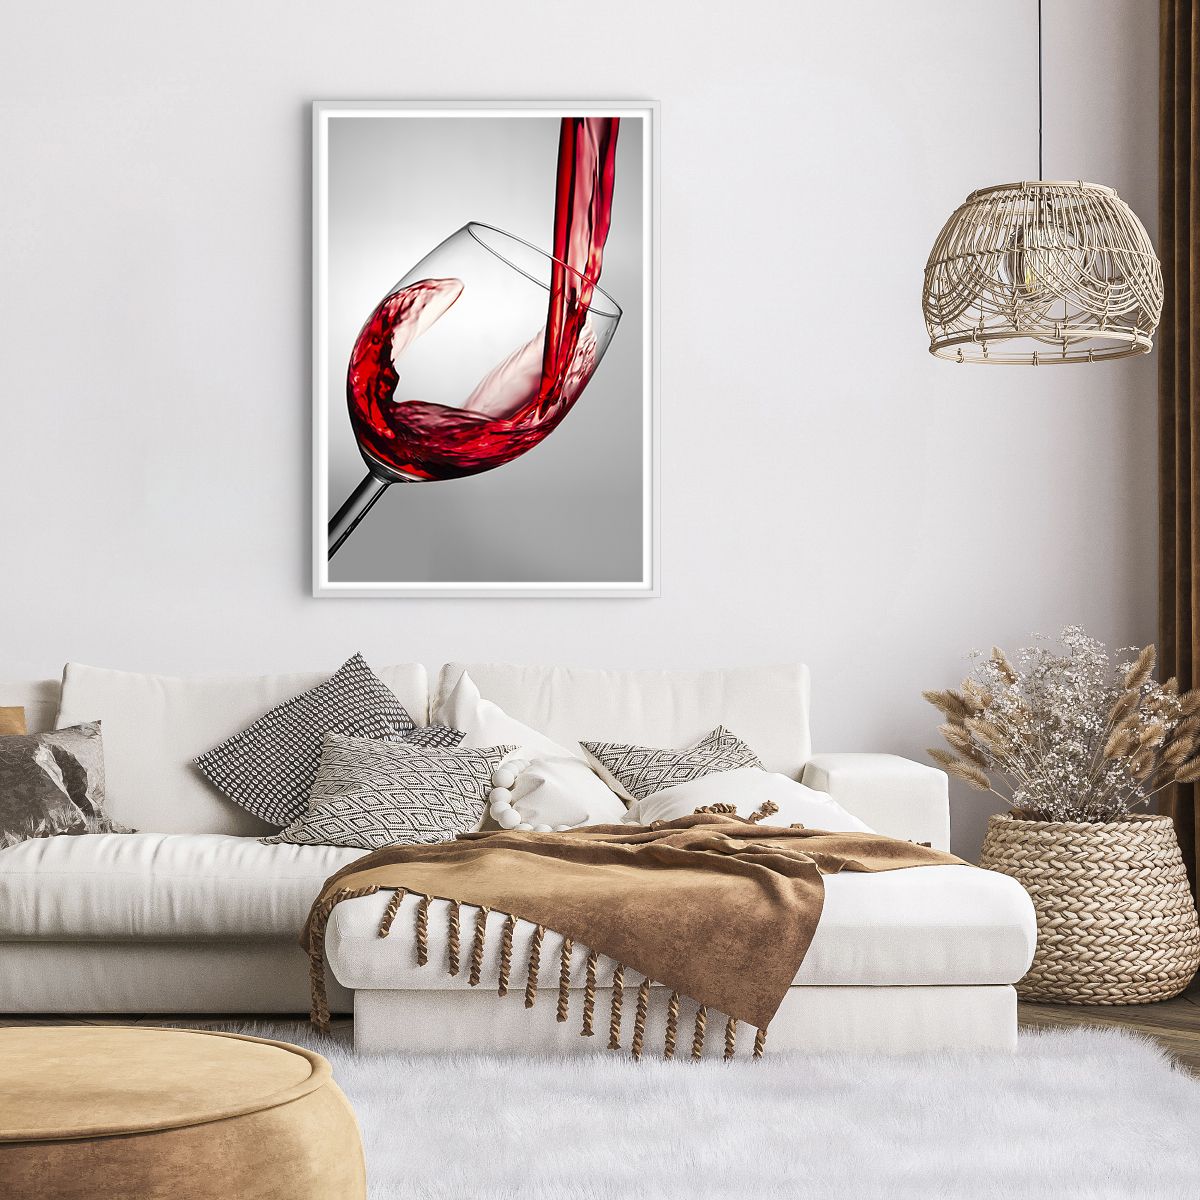 Poster in einem weißen Rahmen Weinglas, Poster in einem weißen Rahmen Rotwein, Poster in einem weißen Rahmen Gastronomie, Poster in einem weißen Rahmen Spiel, Poster in einem weißen Rahmen Toast